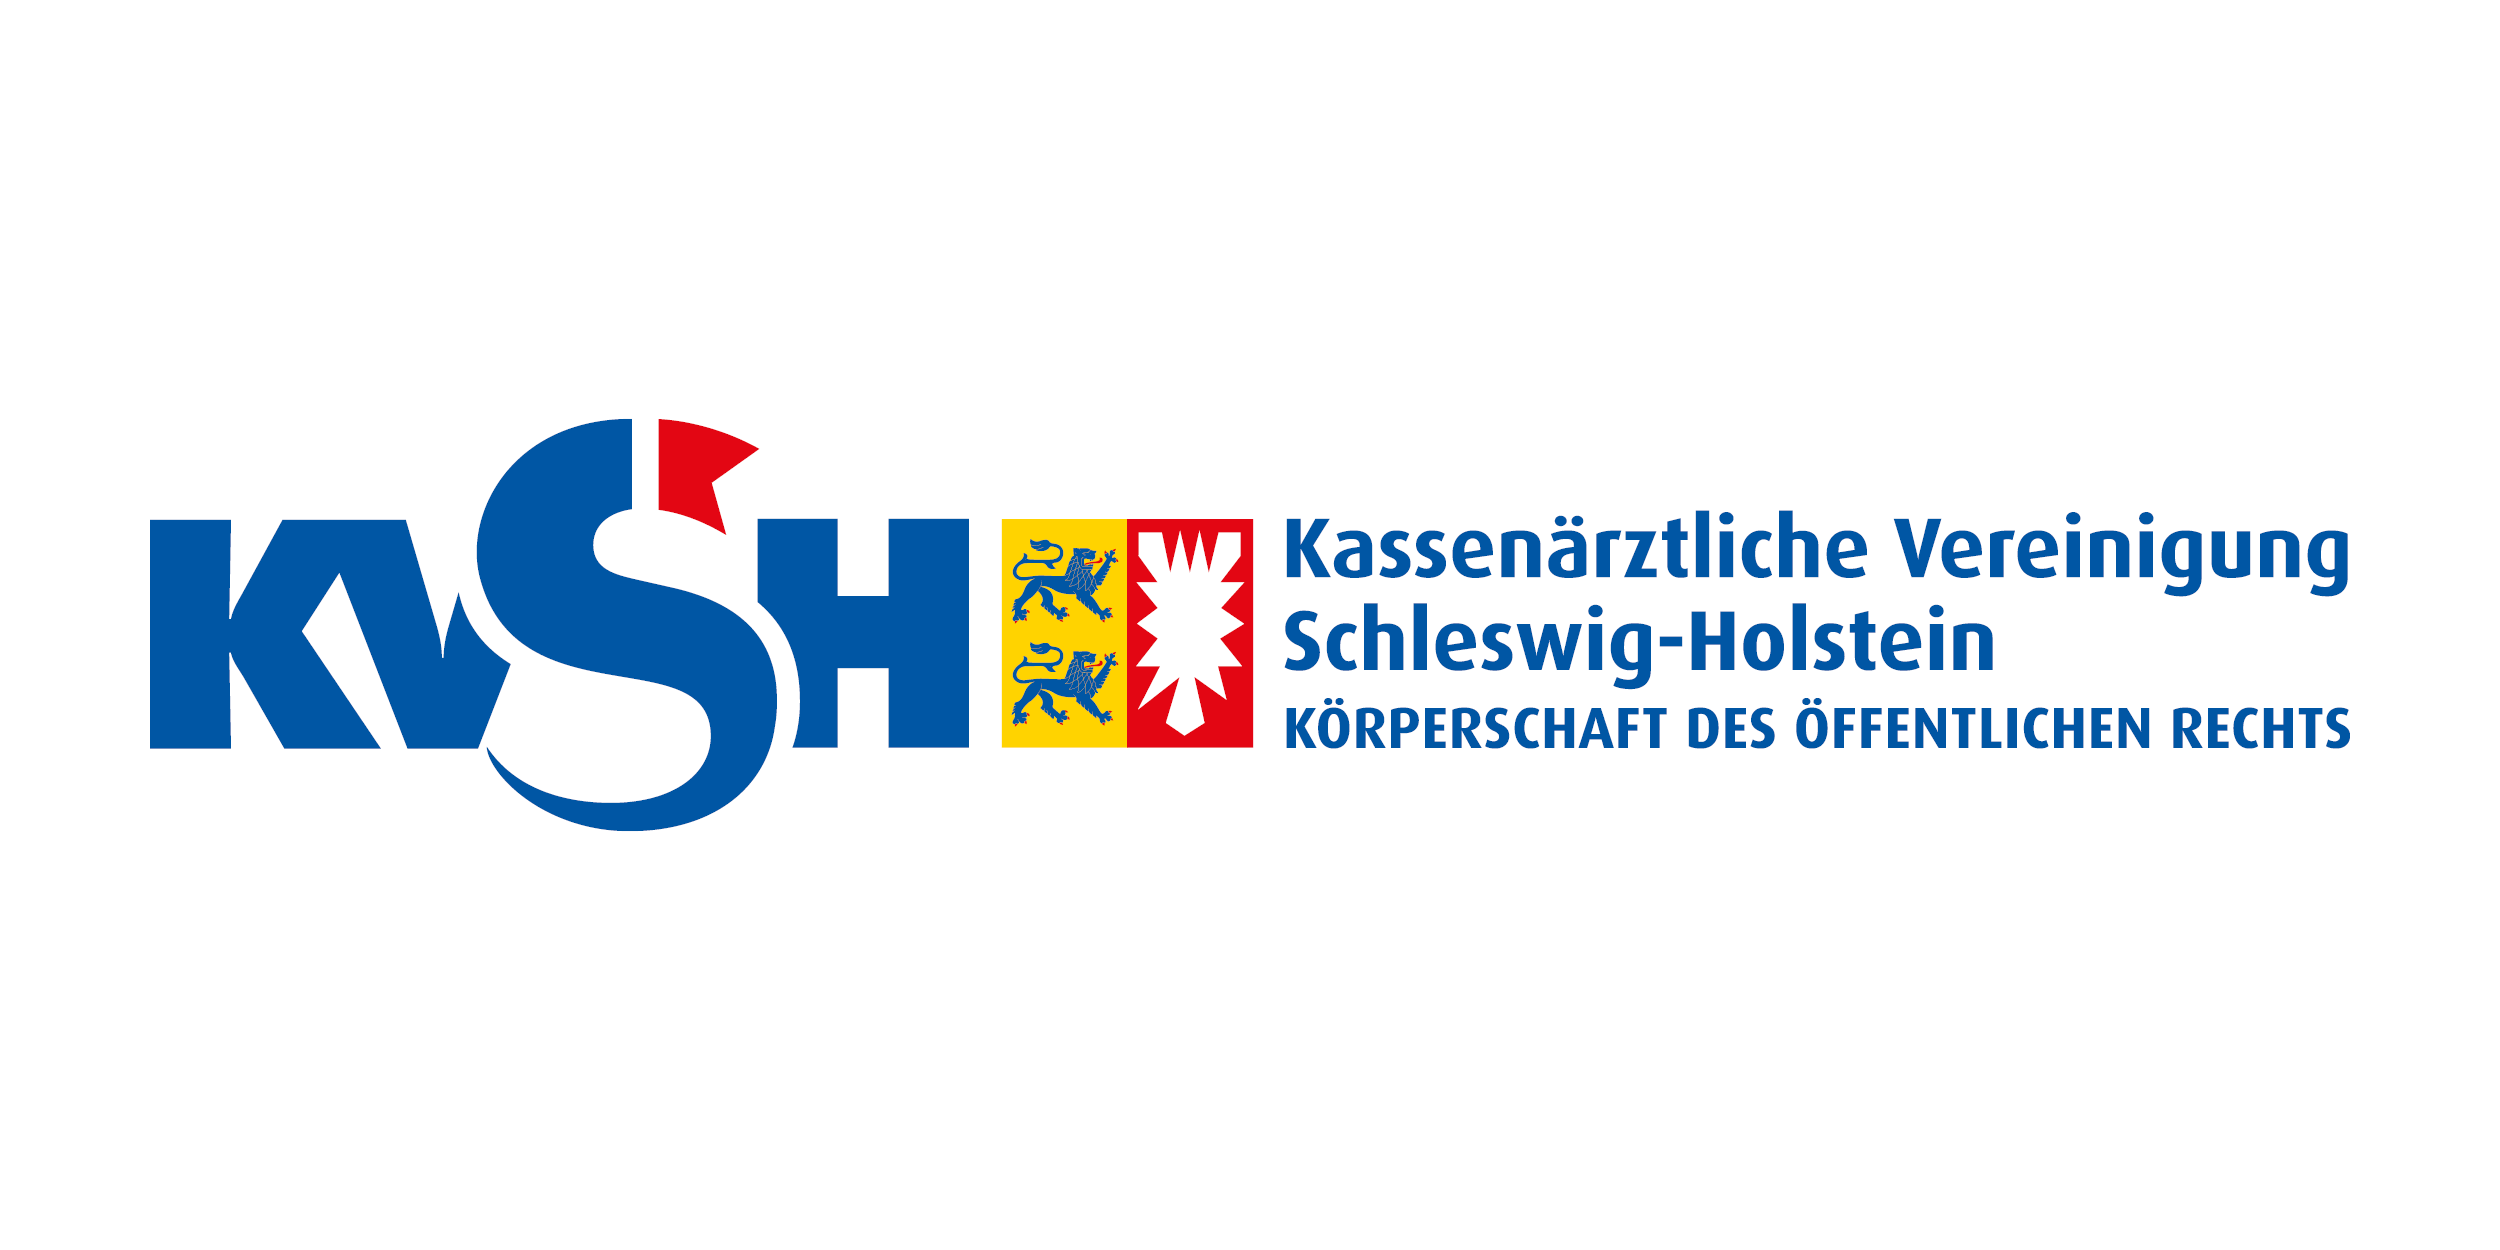 Das Bild zeigt das Logo der KV Schleswig-Holstein.